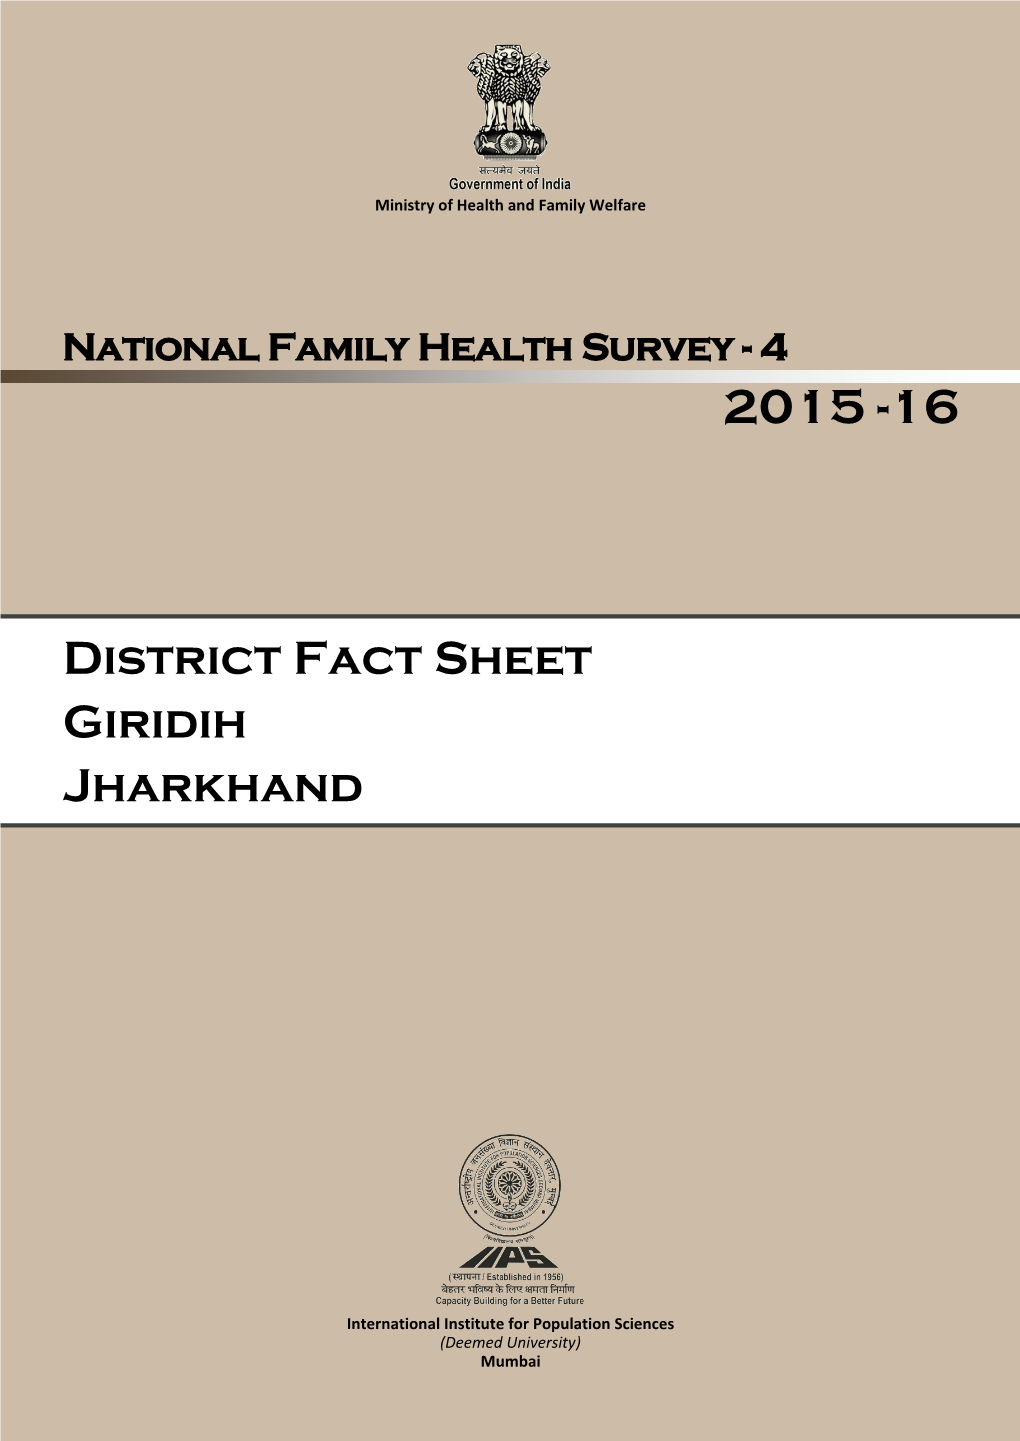 District Fact Sheet Giridih Jharkhand